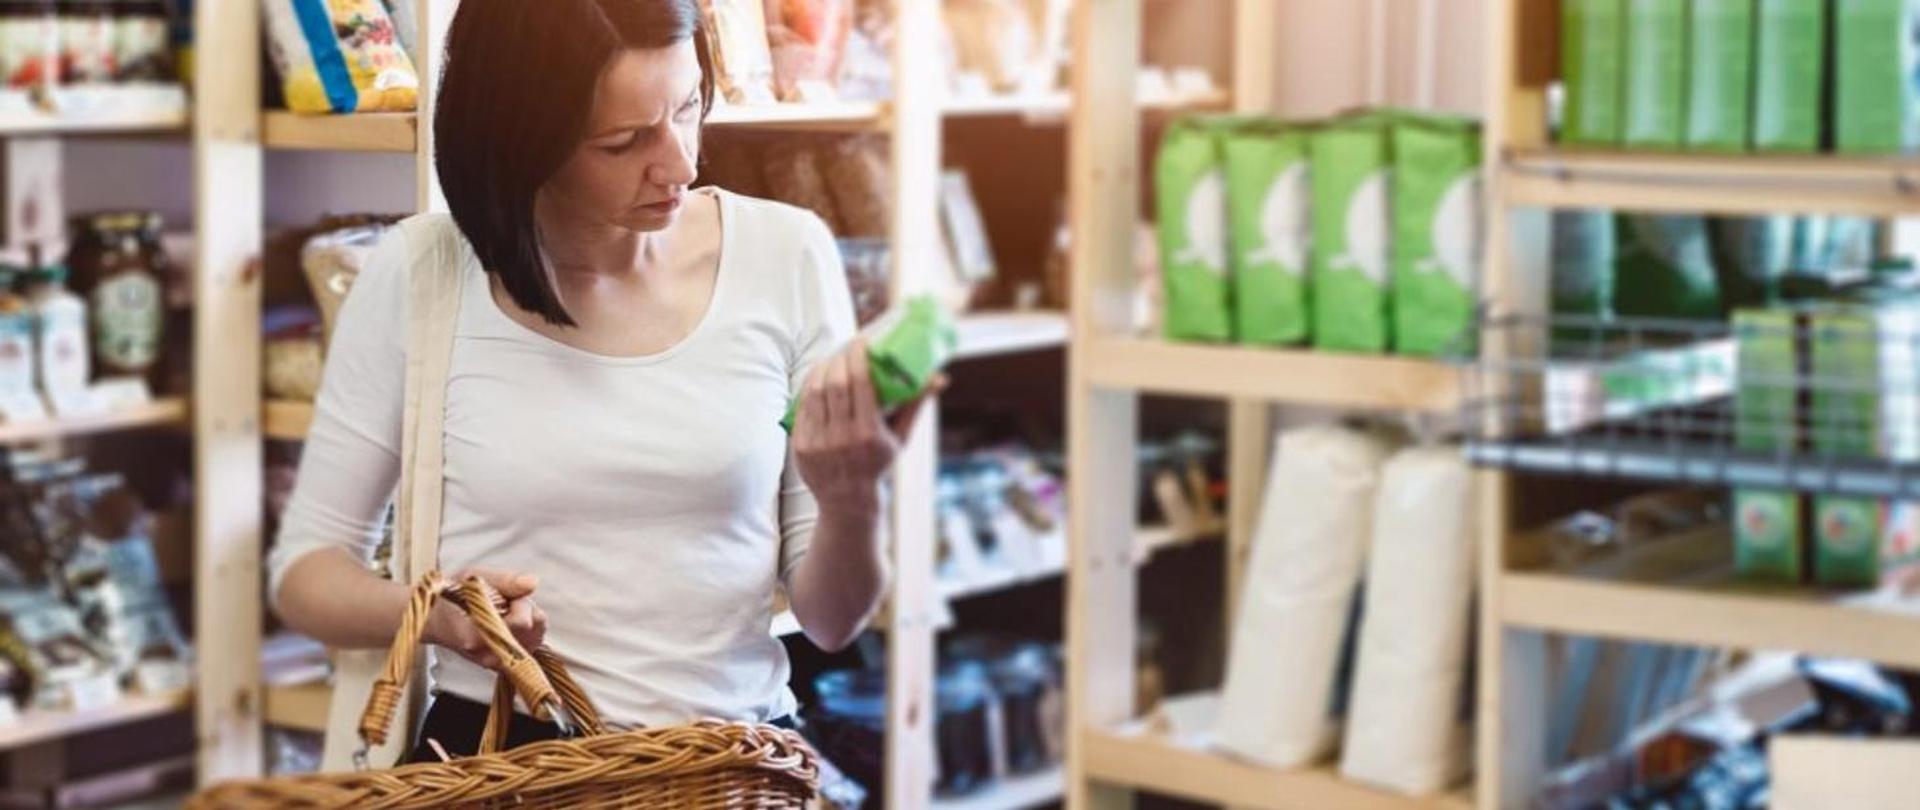 Na zdjęciu widać kobietę w białej bluzce, znajdująca sie w sklepie. Kobieta w jednej ręce trzyma koszyk w drugiej ręce torebkę z produktem. Kobieta przygląda się tej torebce.